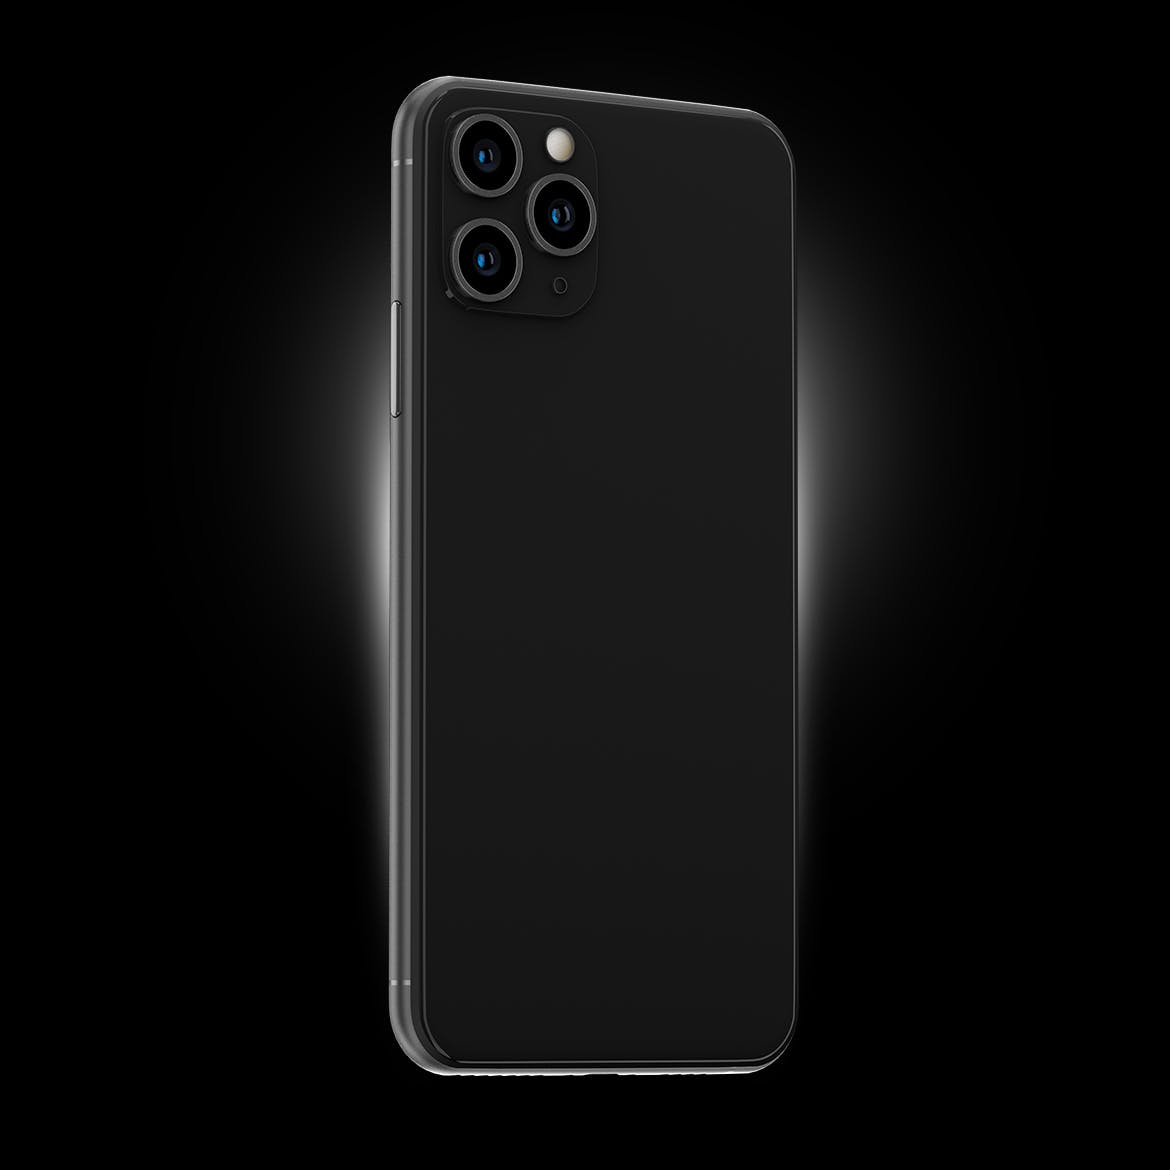 黑色iPhone 11 Pro Max智能手机APP设计预览第一素材精选样机 Phone 11 Black PSD Mockups插图(3)